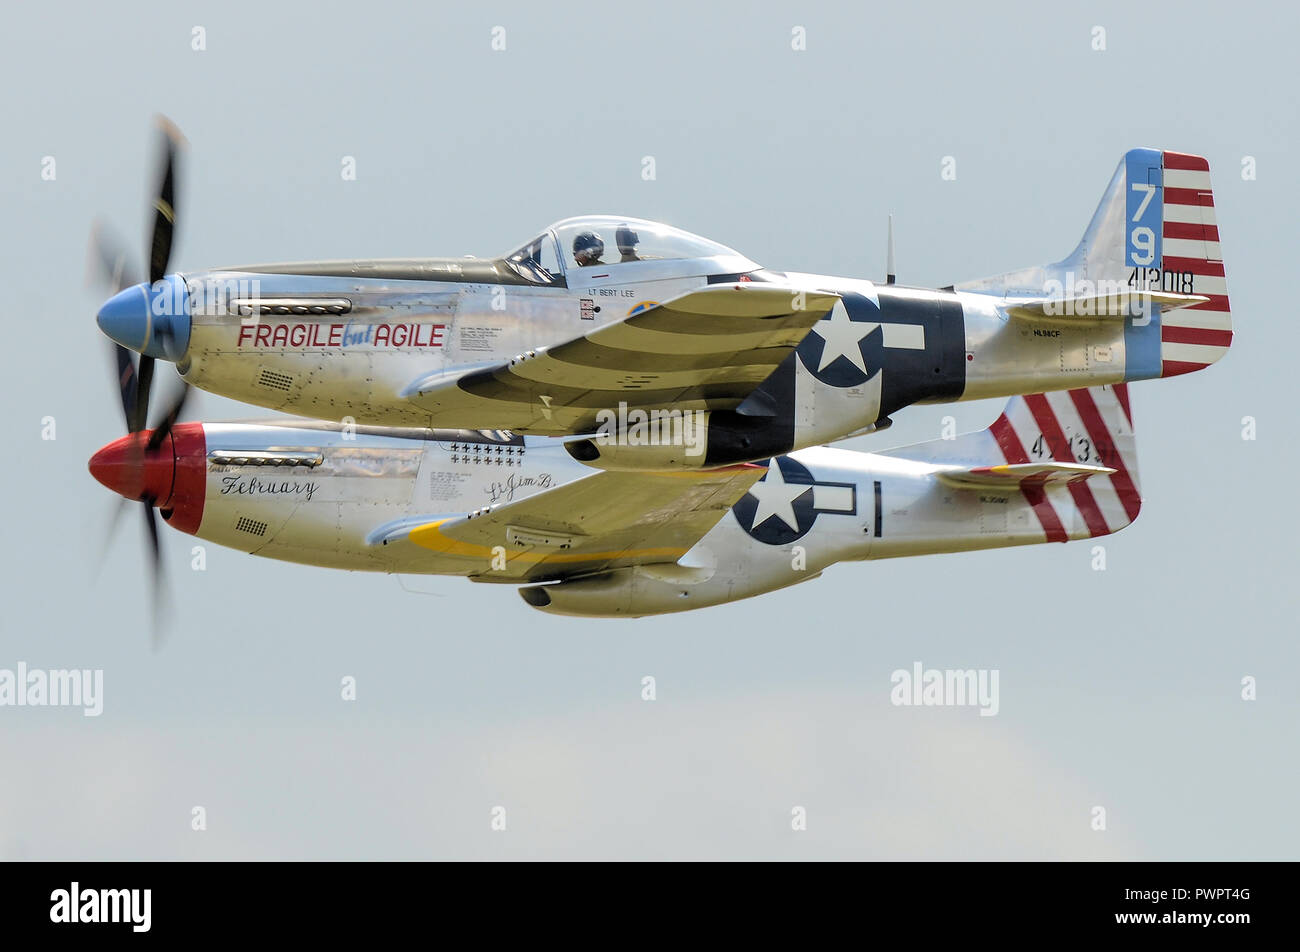 North American P-51 Mustang avions volant à un meeting aérien. Paire de P-51 Mustang nommé fragile mais agile et Février. Avion. Airplane Banque D'Images